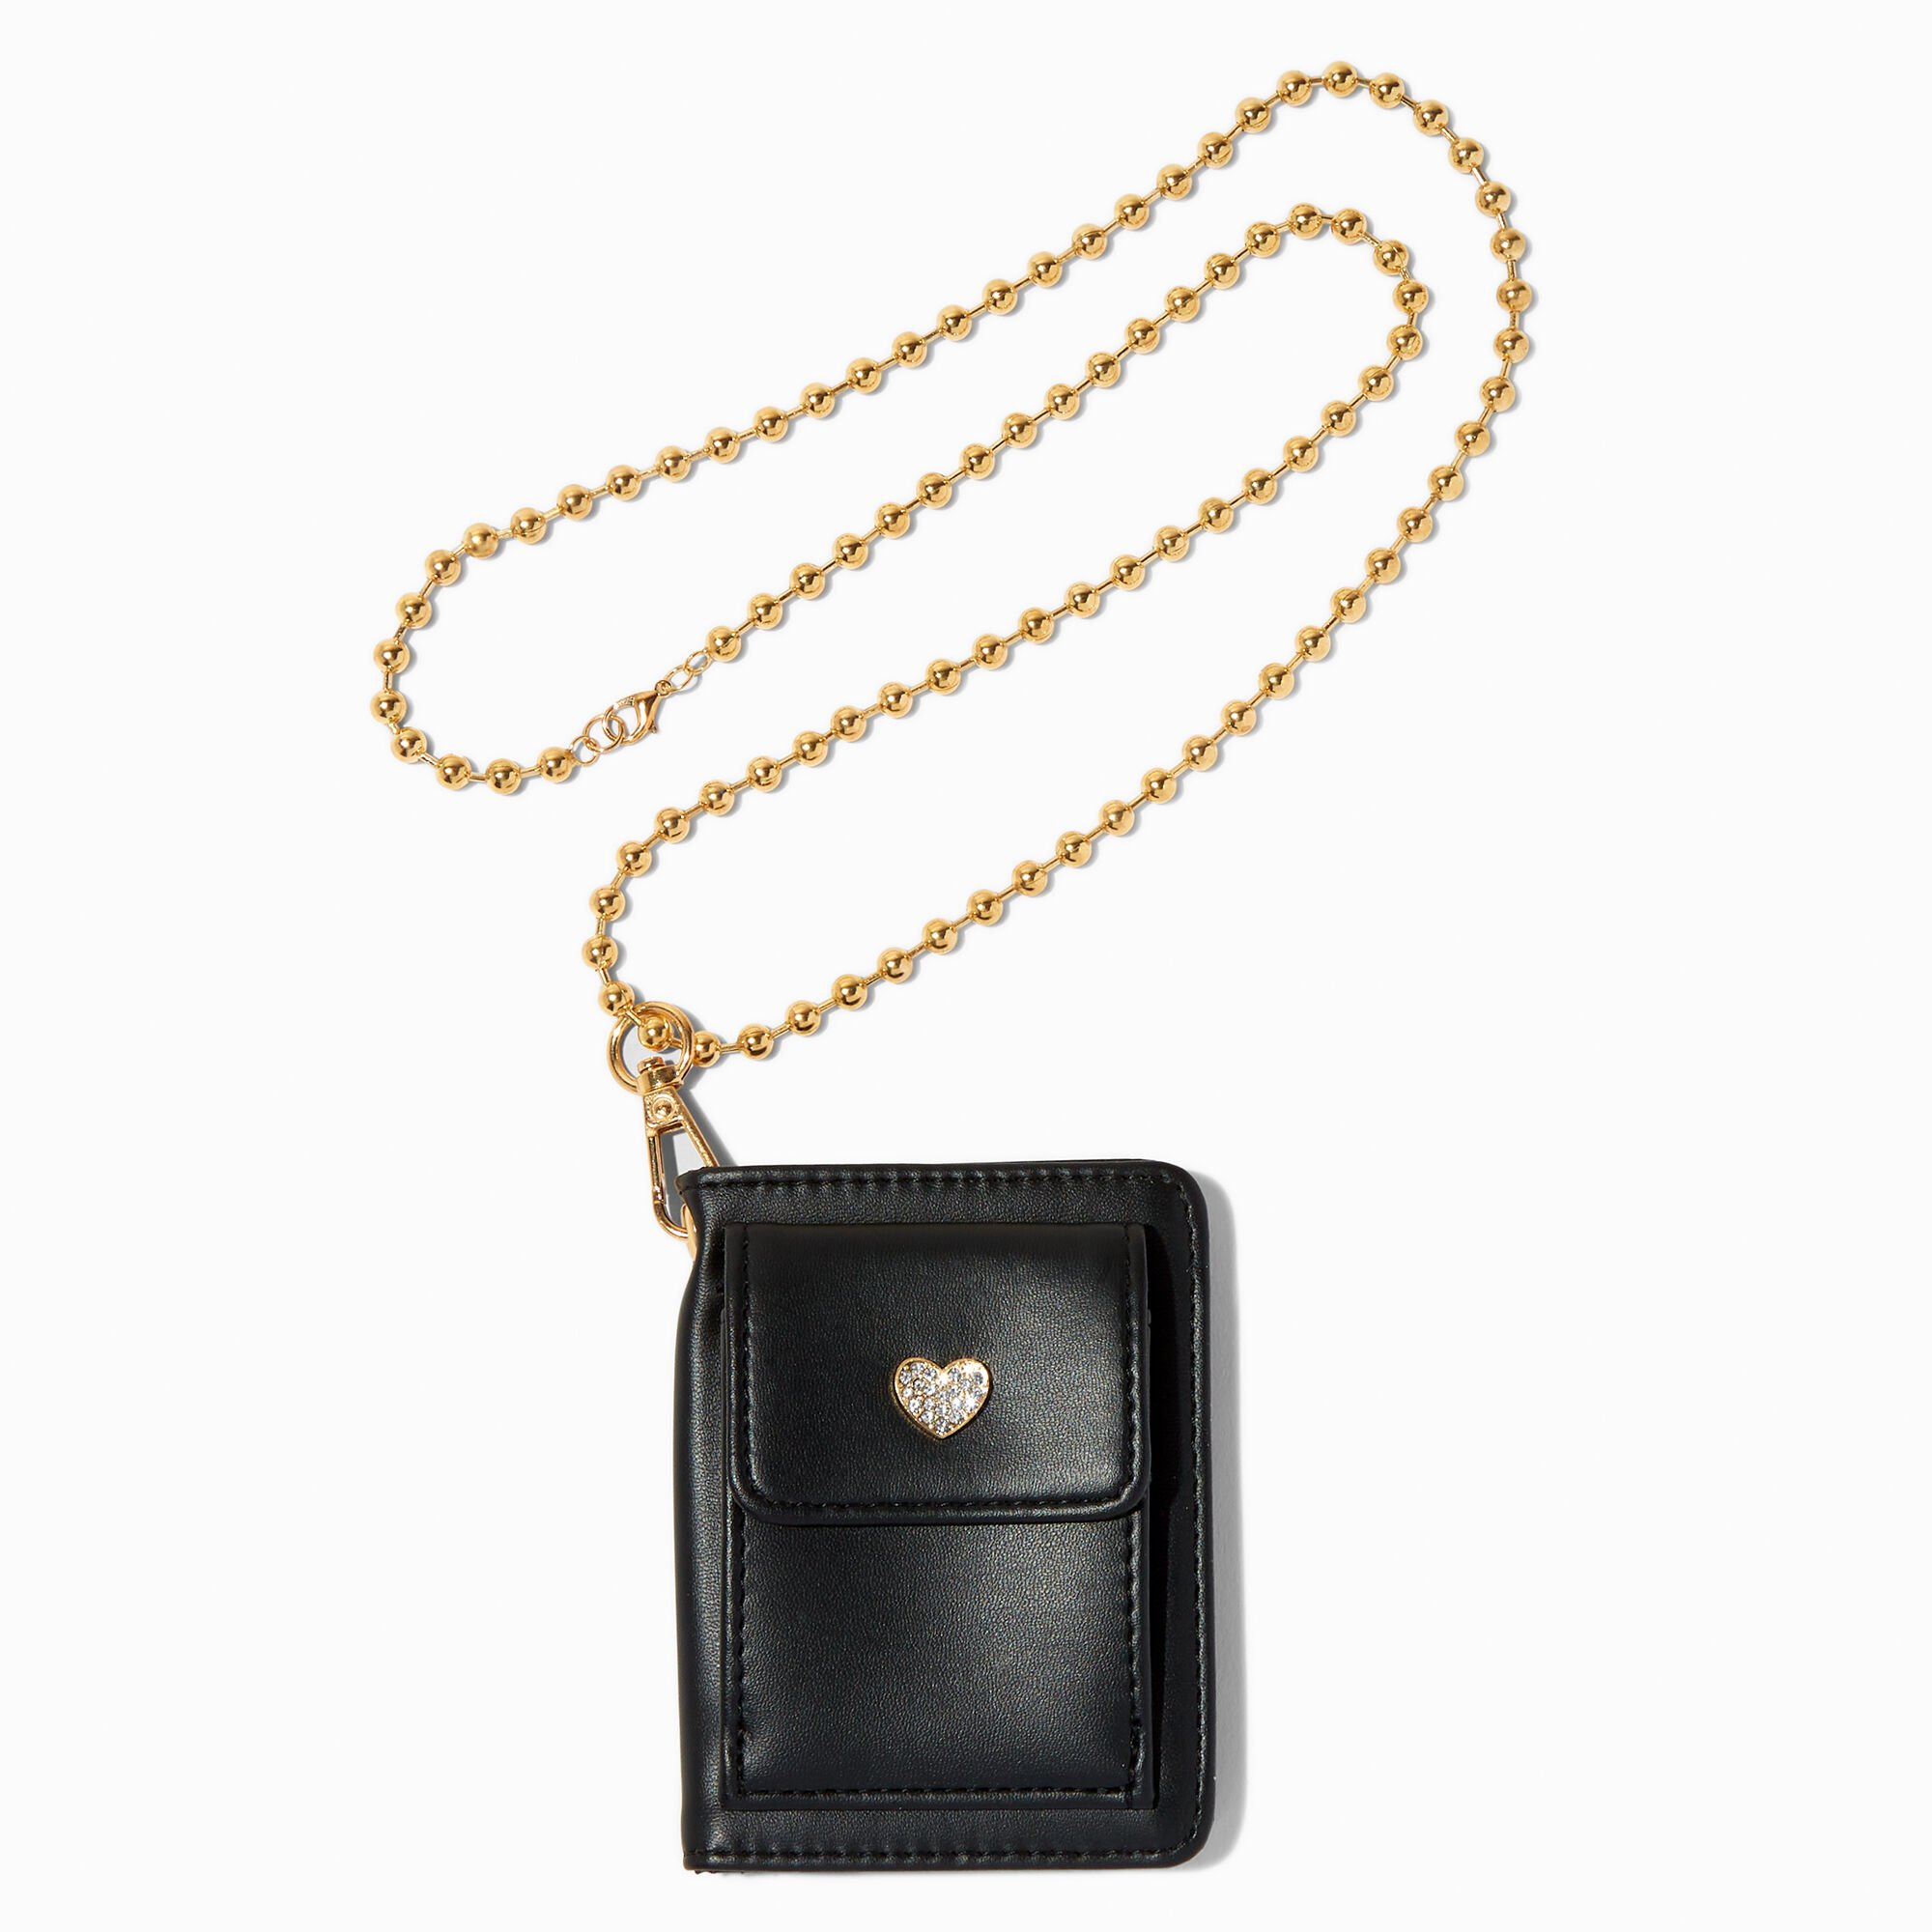 Claire's Cordon tour de cou en chaîne couleur dorée sur porte-monnaie noir cœur en strass